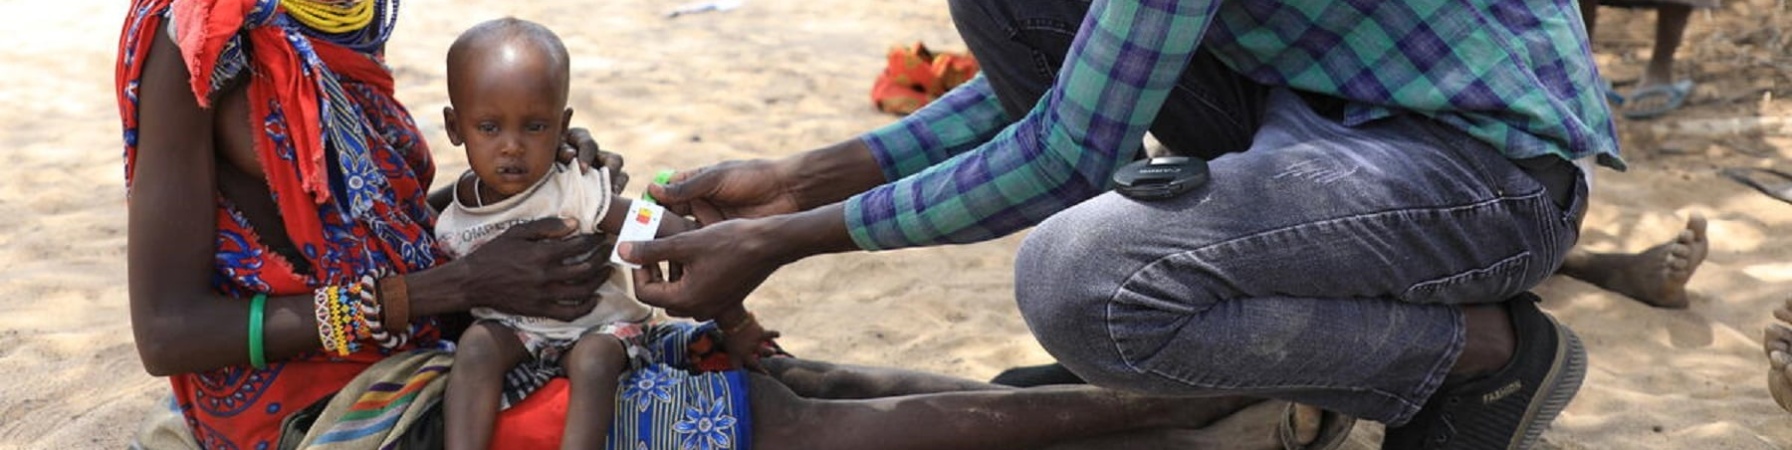 Bambino keniota in braccio alla madre mentre un dottore misura il livello di malnutrizione mettendo il braccialetto MUAC attorno al braccio 